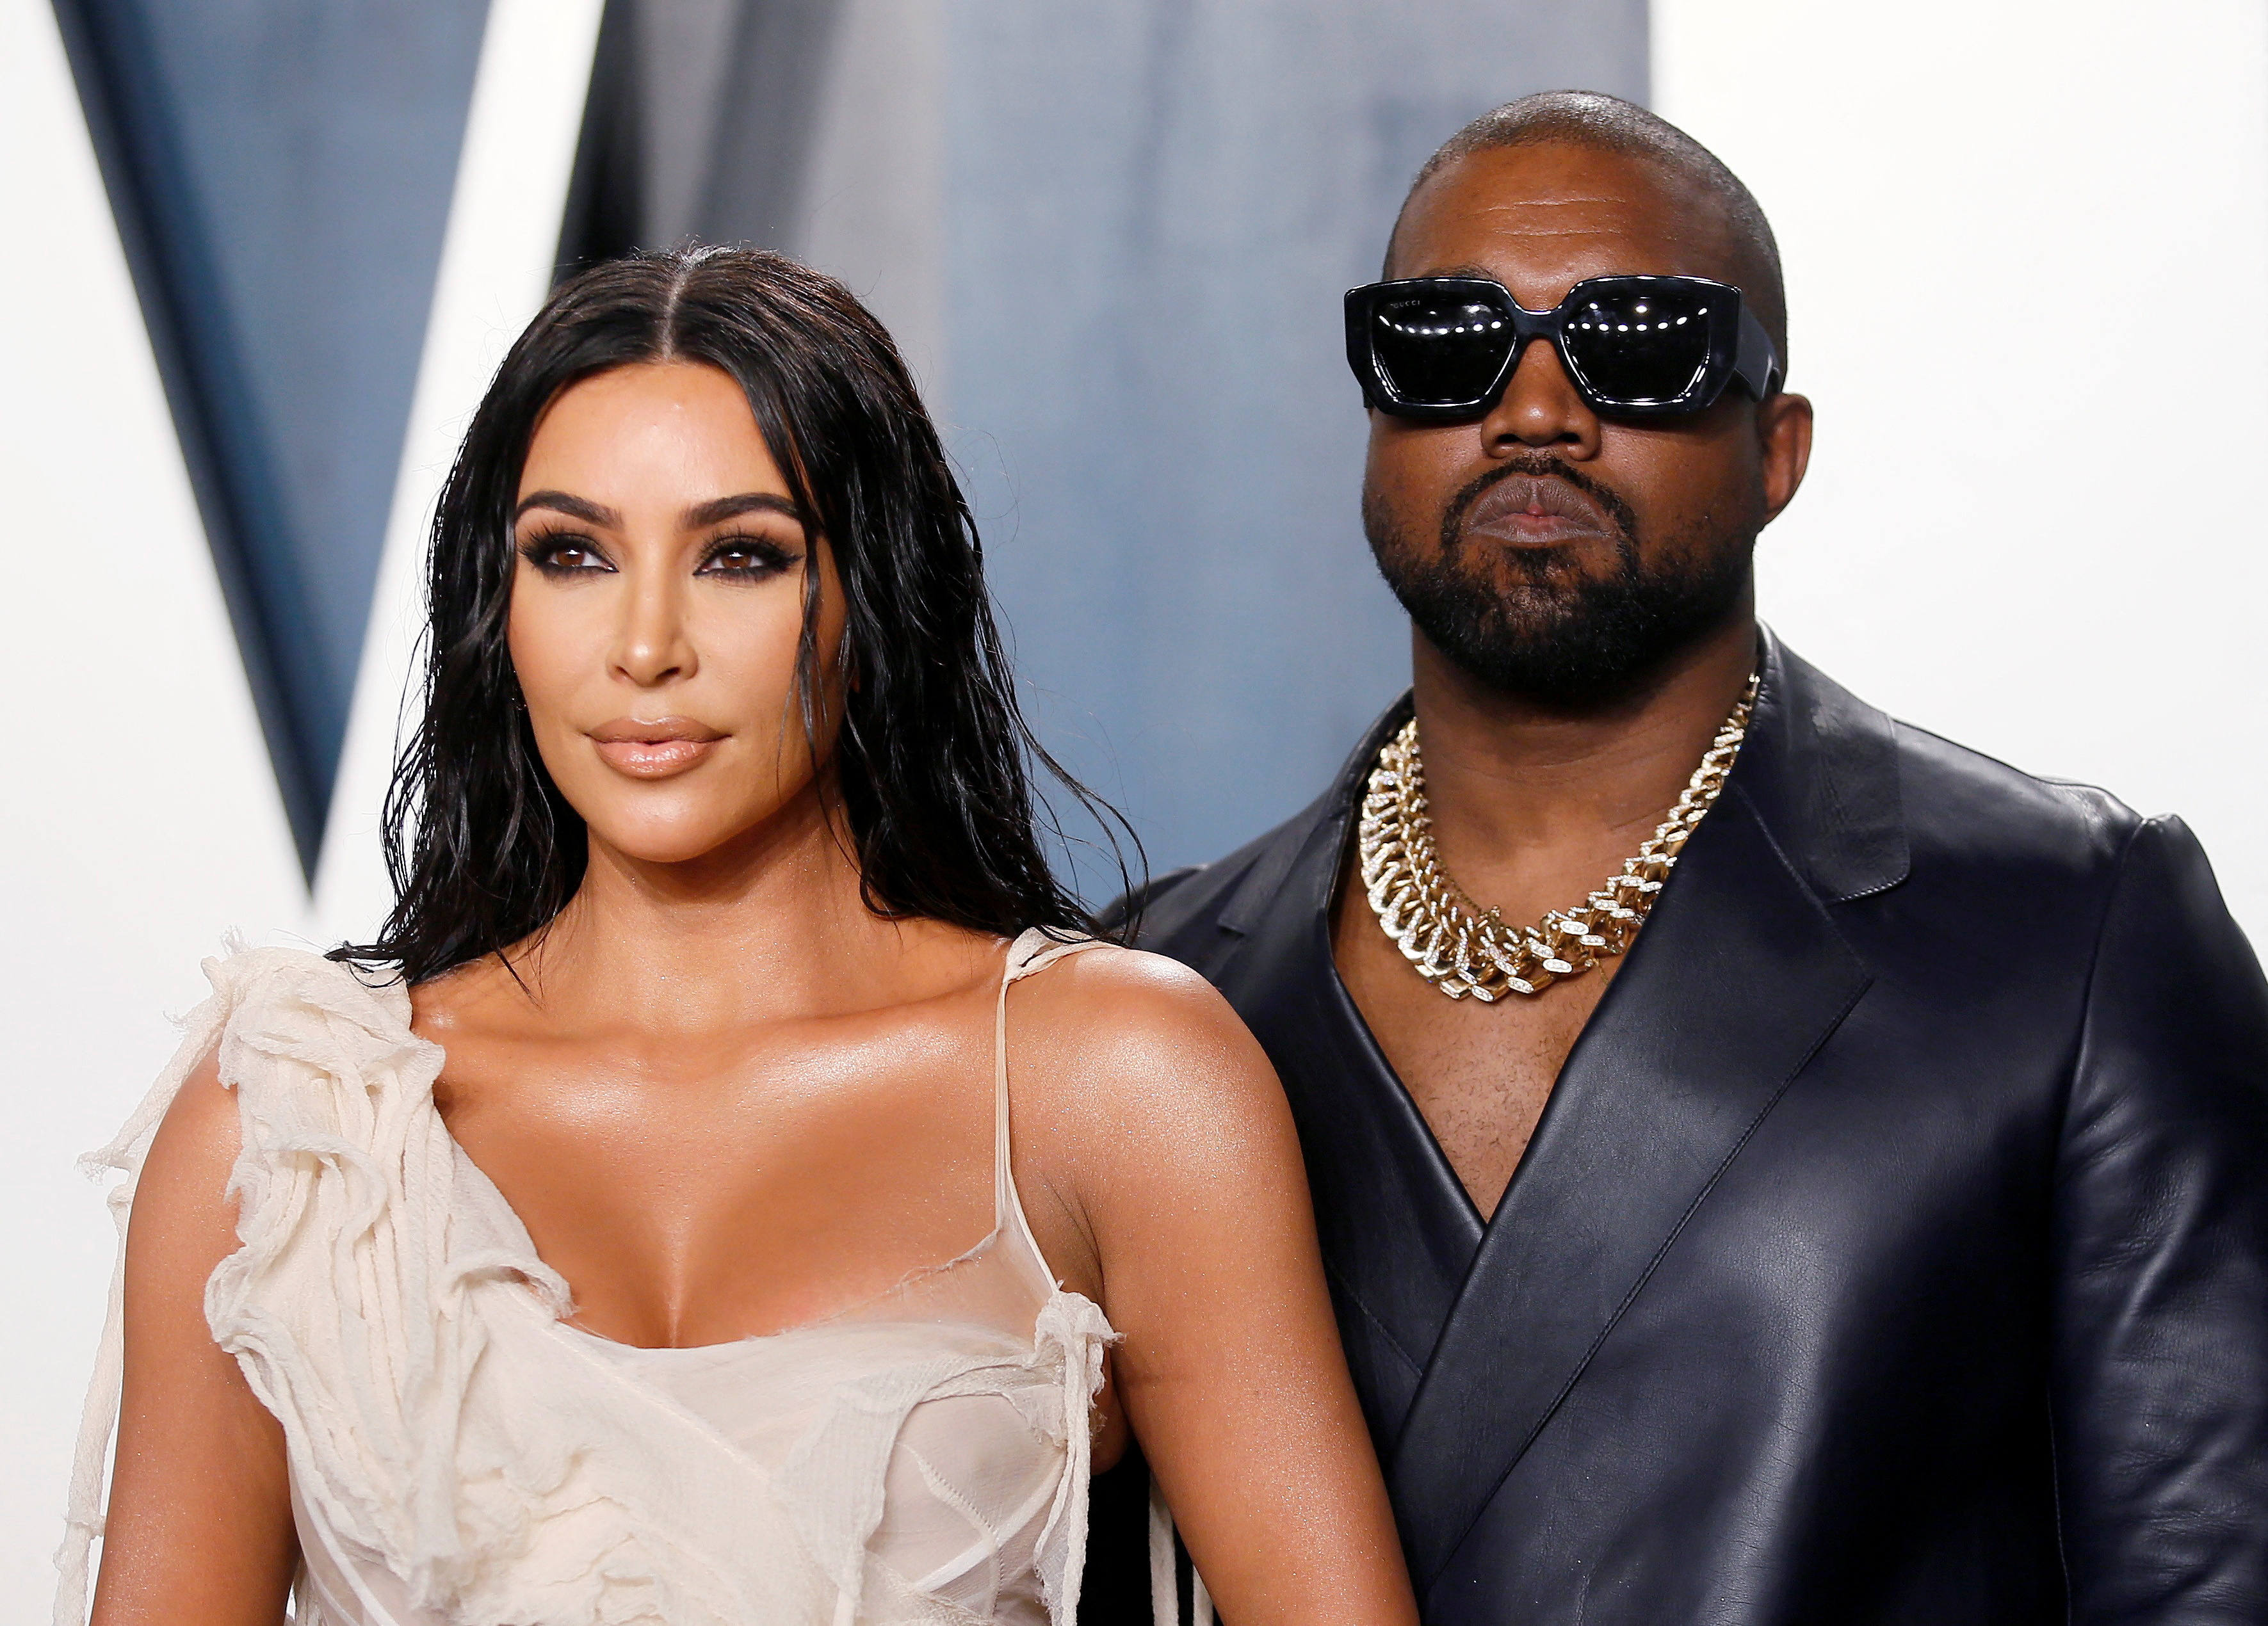 En una entrevista televisiva, Kanye West le pidió perdón a Kim Kardashian y adelantó que planea postularse para presidente nuevamente (Reuters)